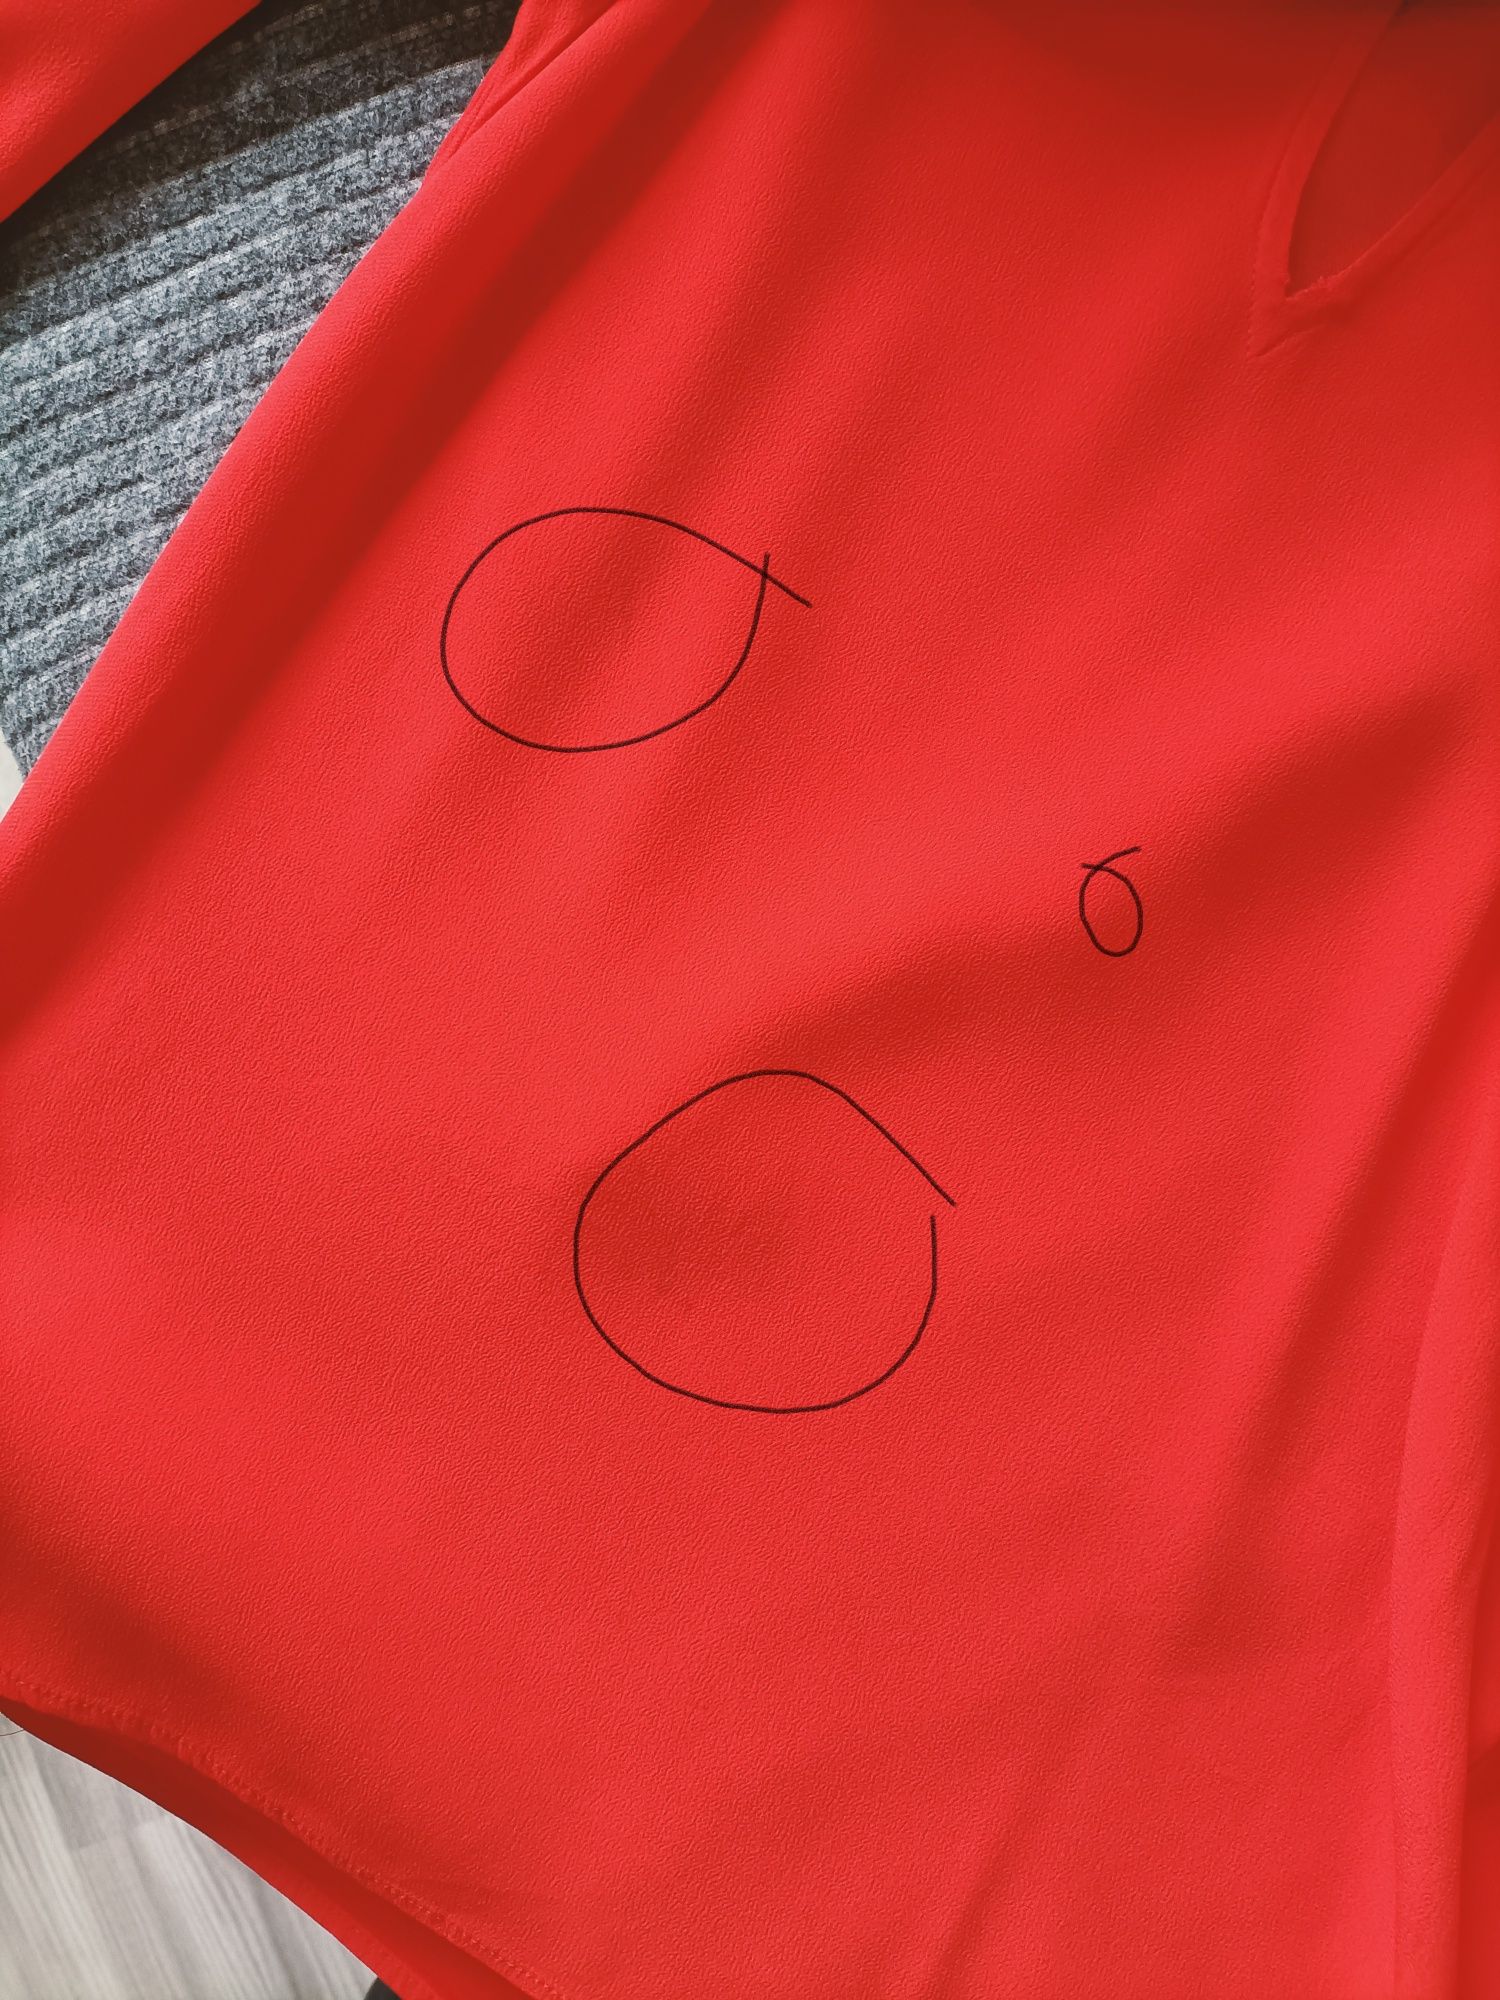 Czerwona bluzka 100% wiskoza Zaraz rozmiar S